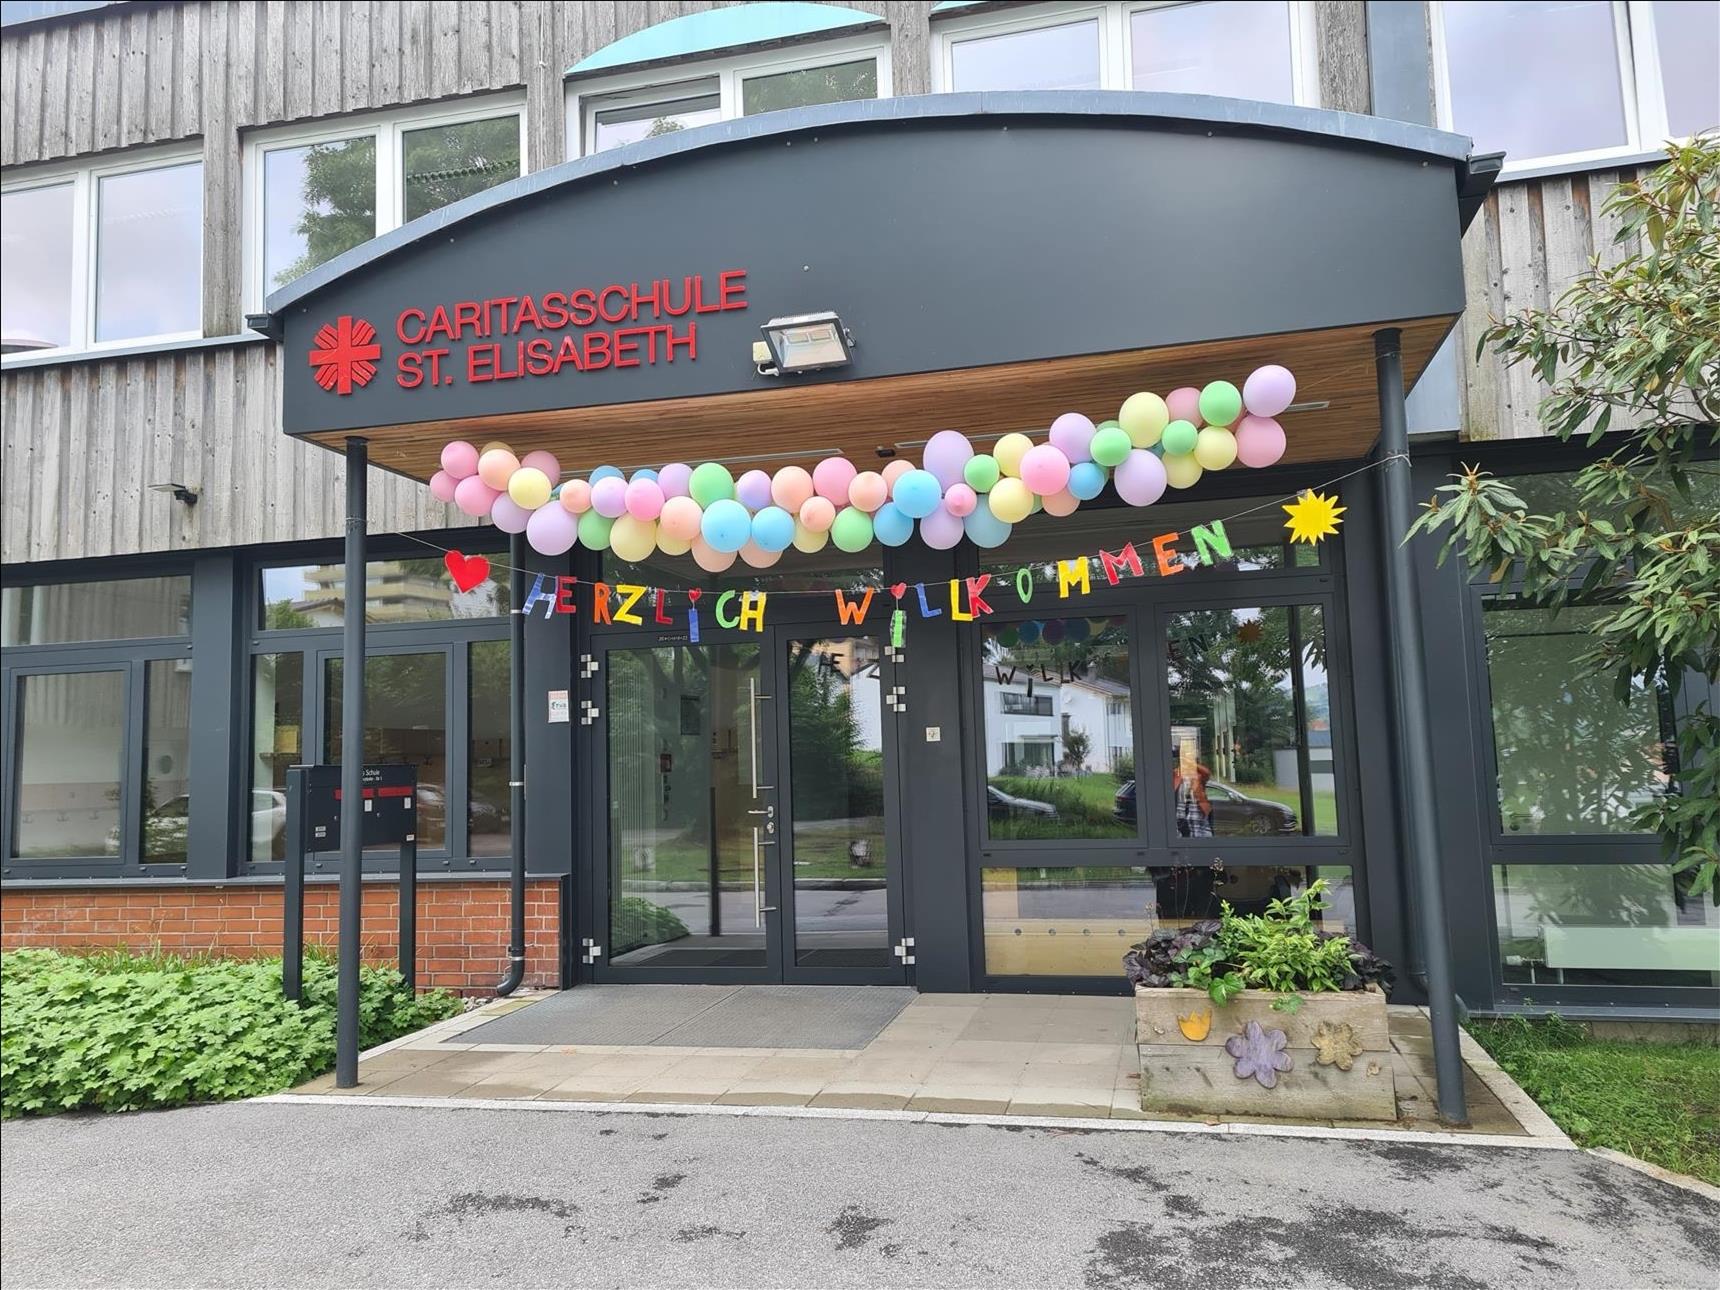 Sommerfest 2022 - Tag der offenen Schulhaustür mit Luftballongirlande und "Herzlich Willkommen". Foto: (c) Grimsmann | Caritas FRG.